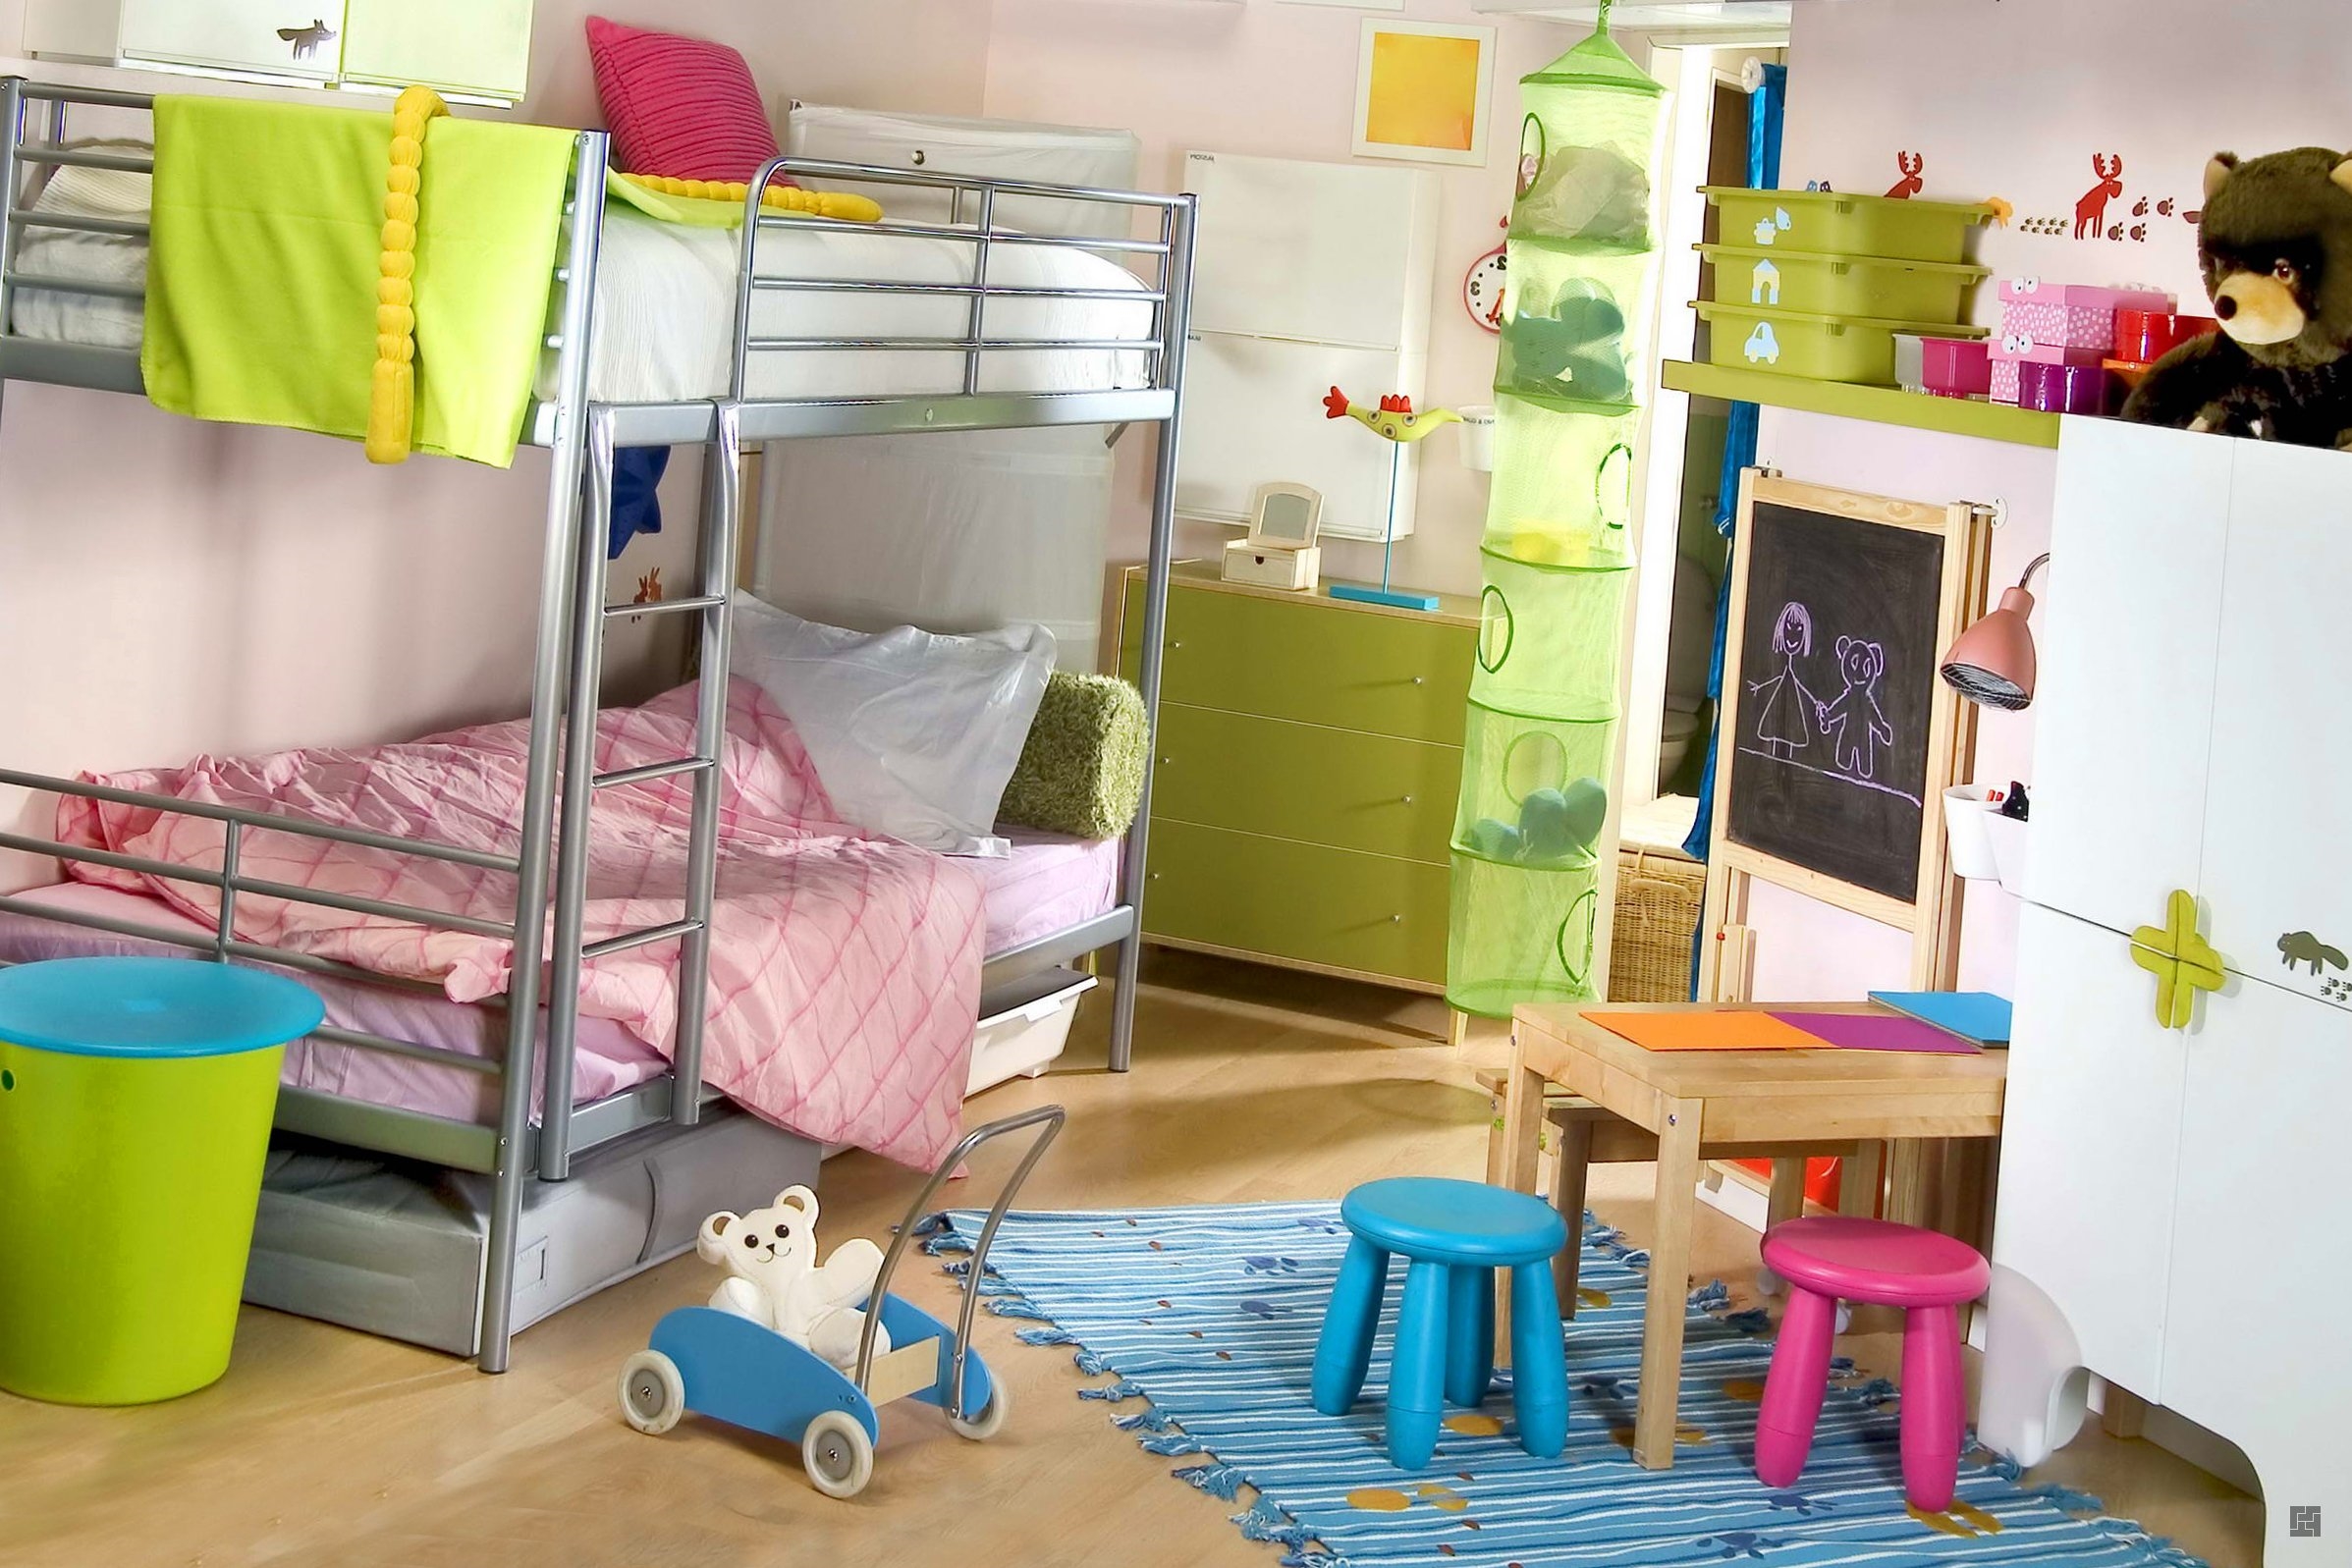 Несколько практических советов по декорированию и обустройству детской комнаты